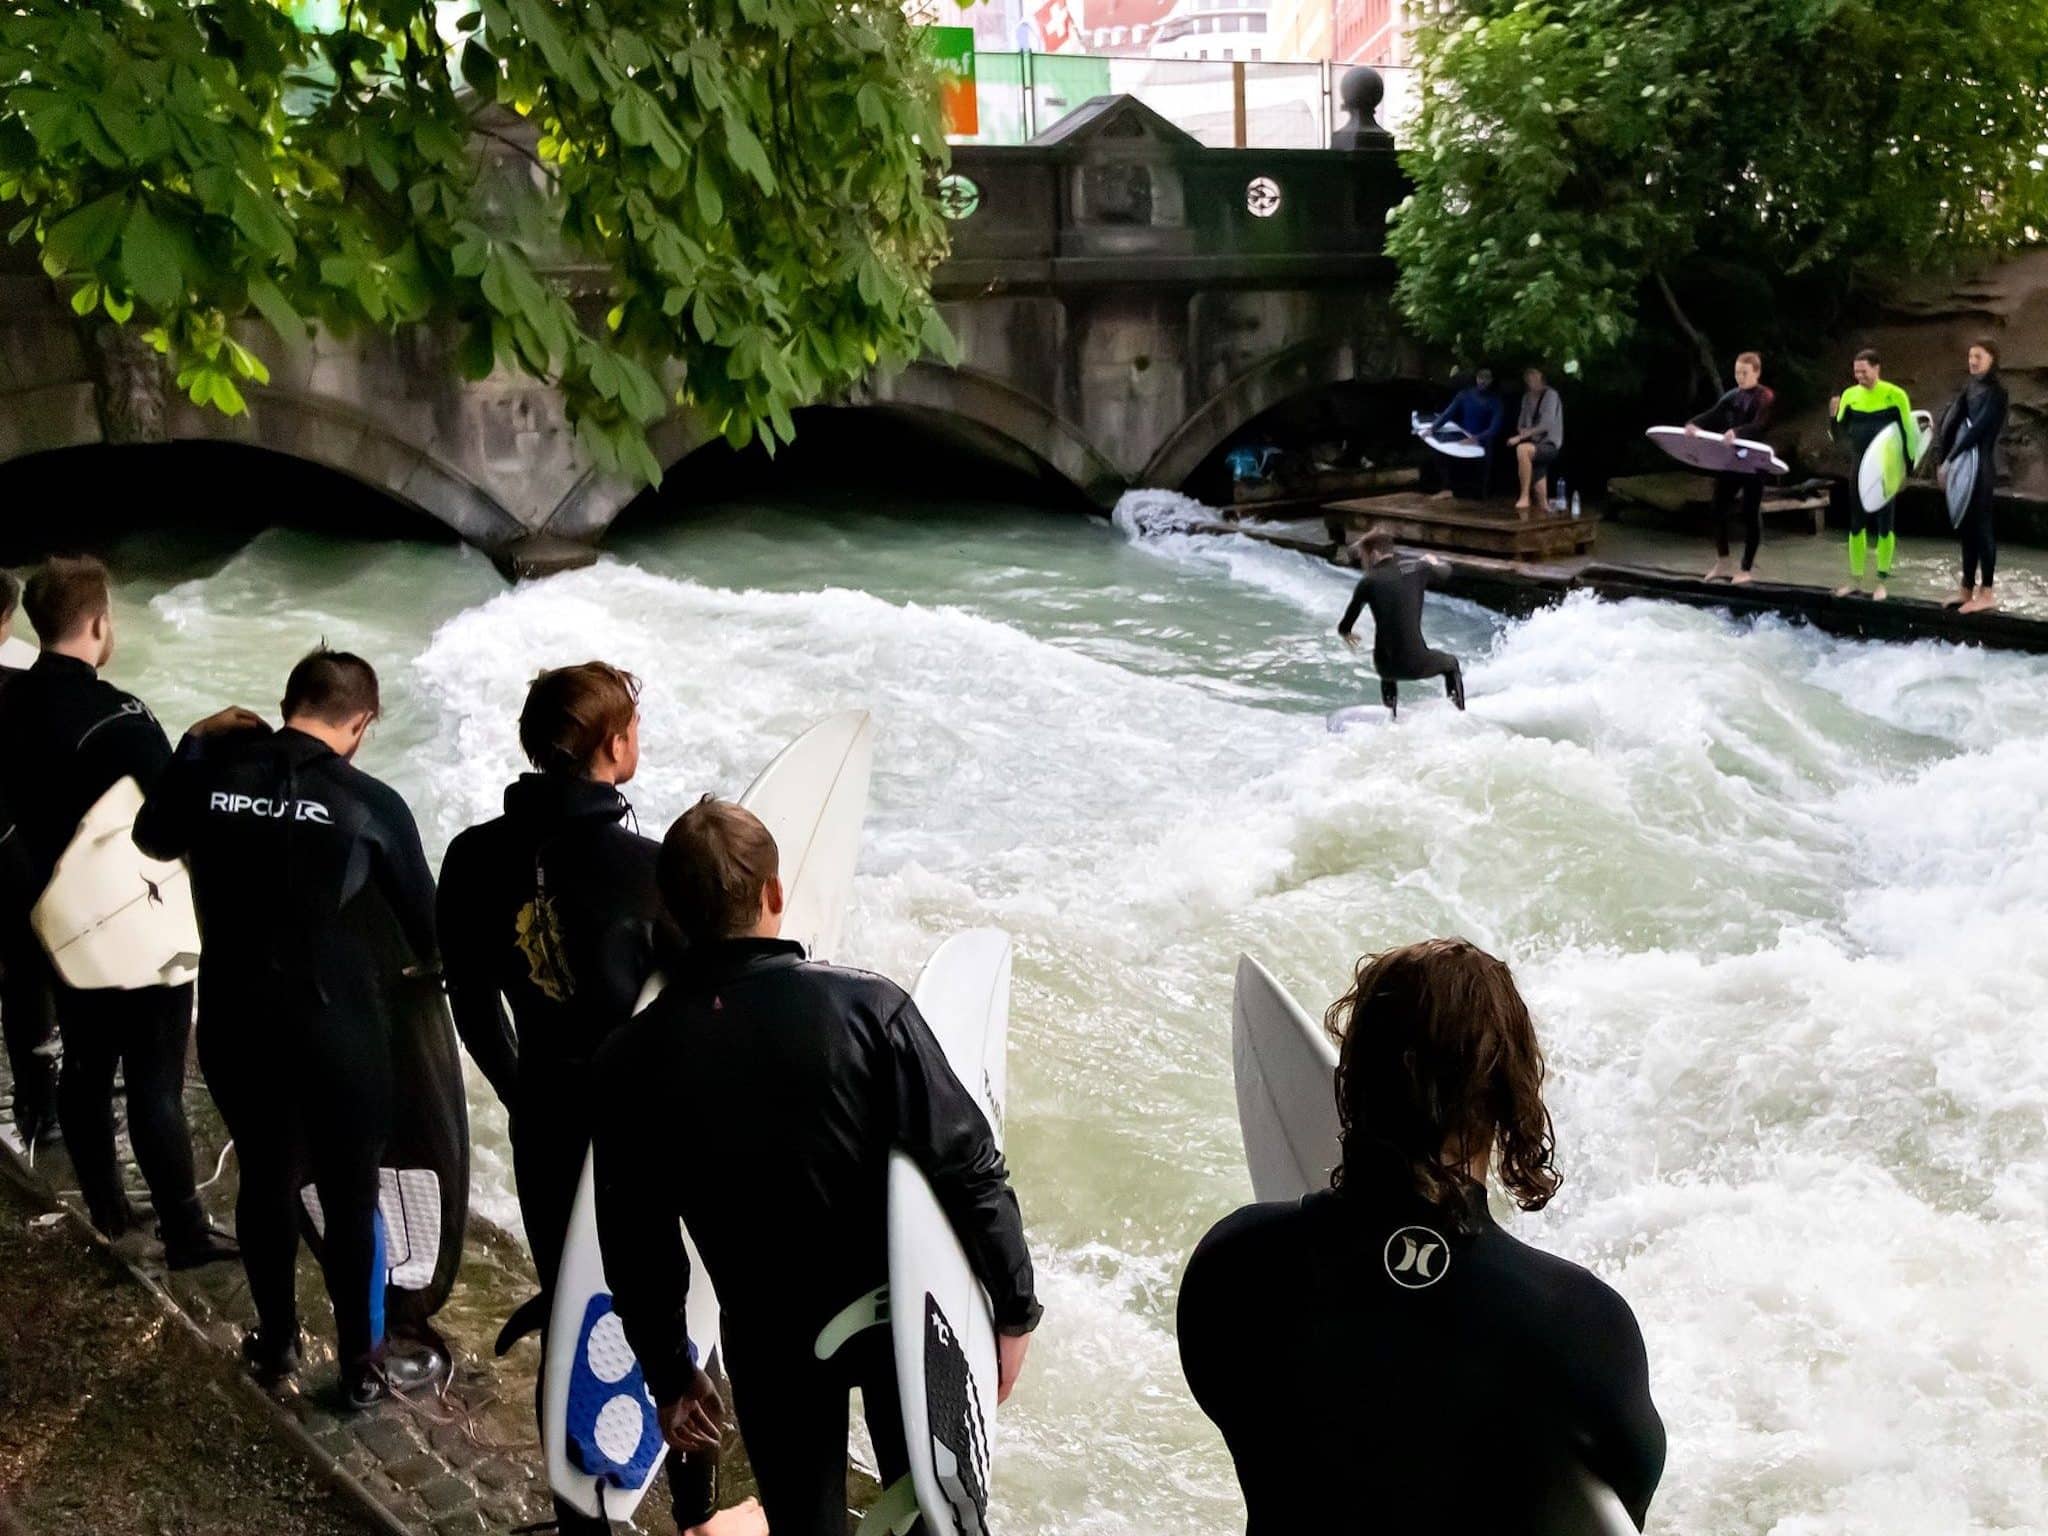 Surfeurs au centre de Munich - des micro-aventures peuvent être vécues dans de nombreux endroits en Allemagne. Photo: Unsplash